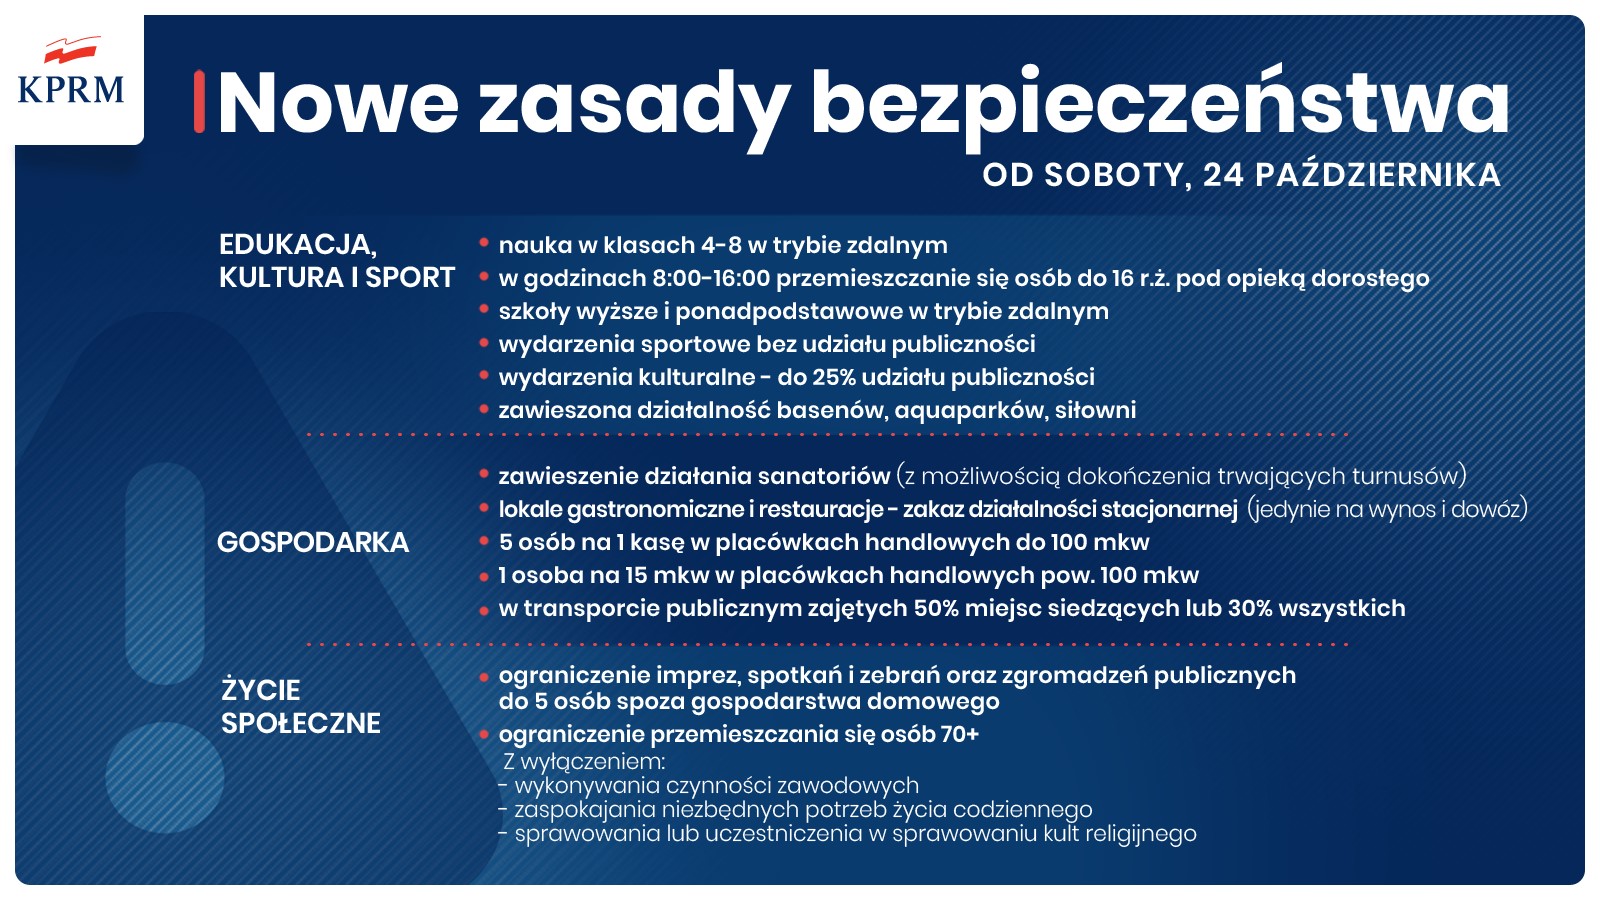  Od soboty, 24 października, w całej Polsce obowiązują nowe zasady bezpieczeństwa